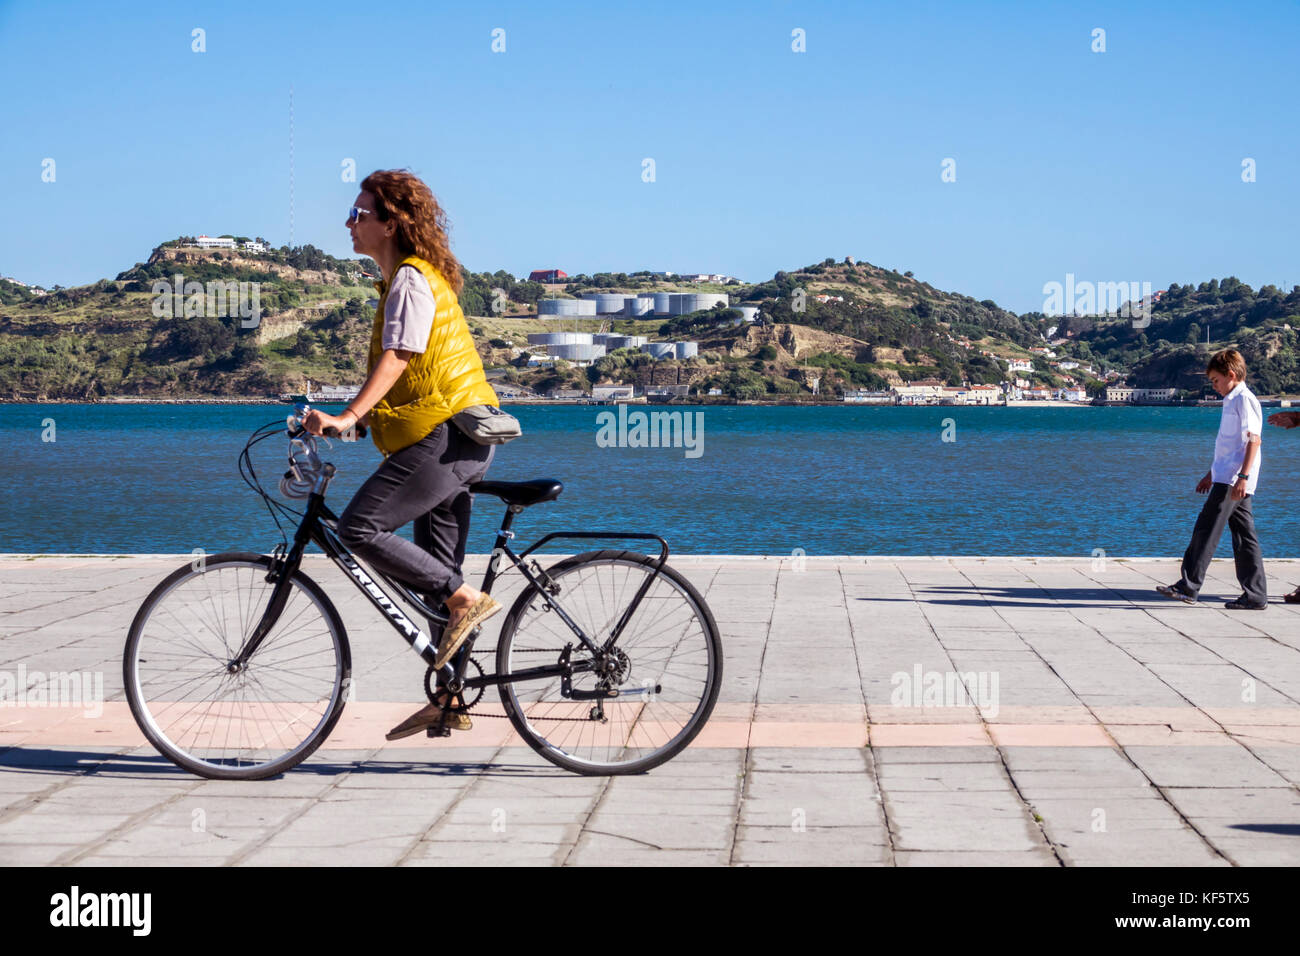 Lisbonne Portugal,Belem,Tage River,front de mer,promenade,femme femme femmes,vélo vélos vélo vélo vélo rider cyclistes vélos,équitation,vue Banque D'Images